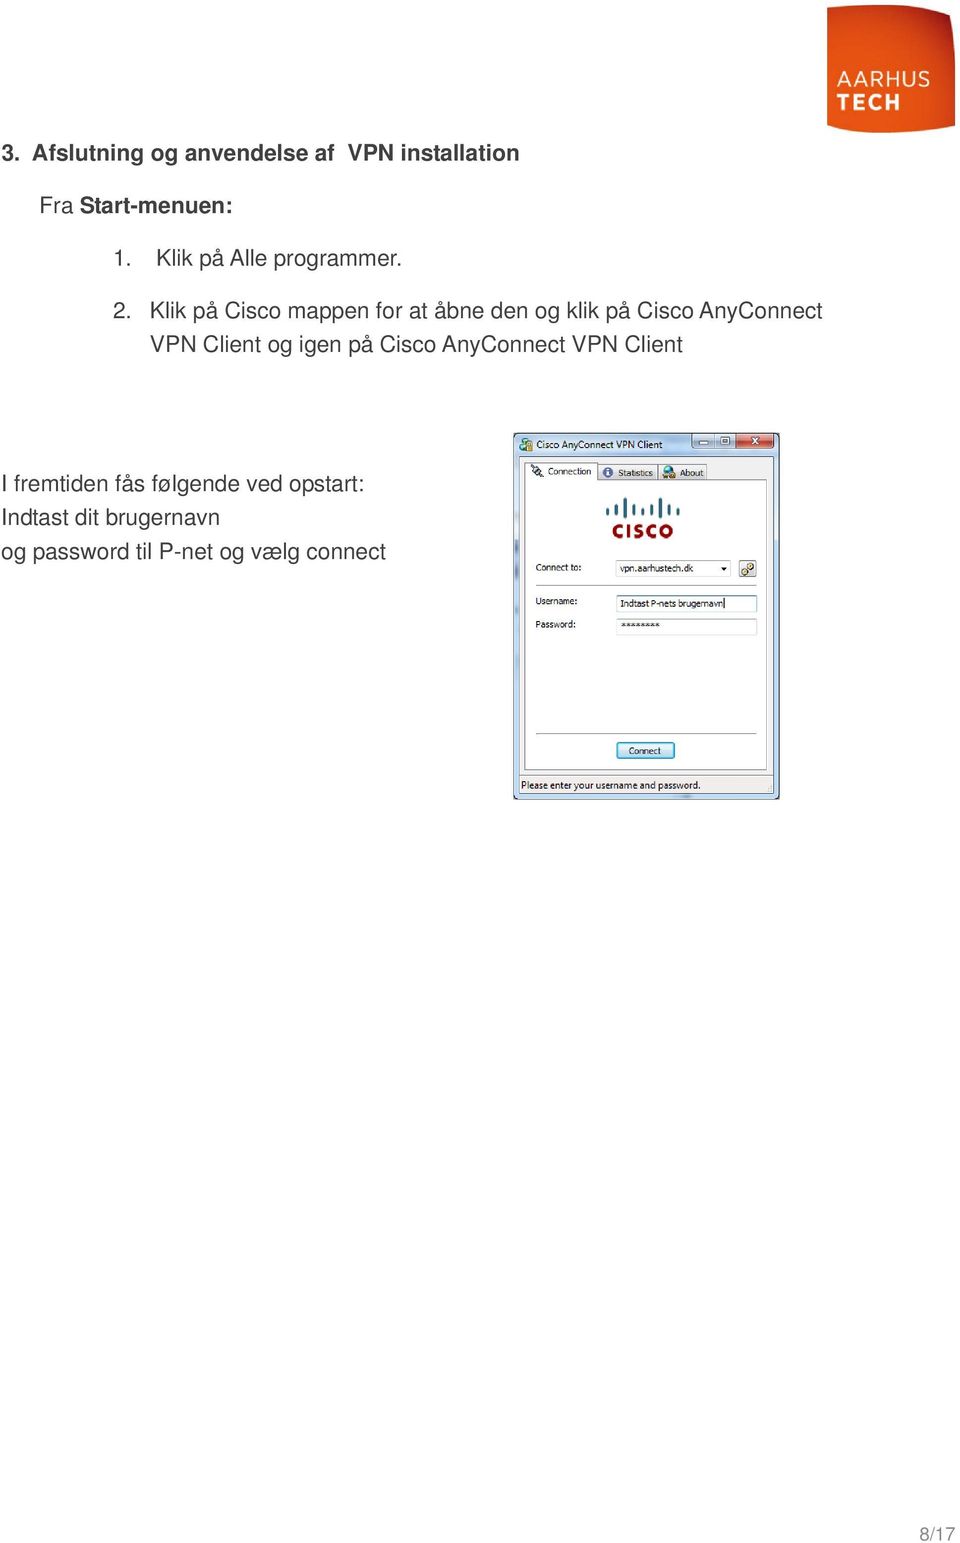 Klik på Cisco mappen for at åbne den og klik på Cisco AnyConnect VPN Client og